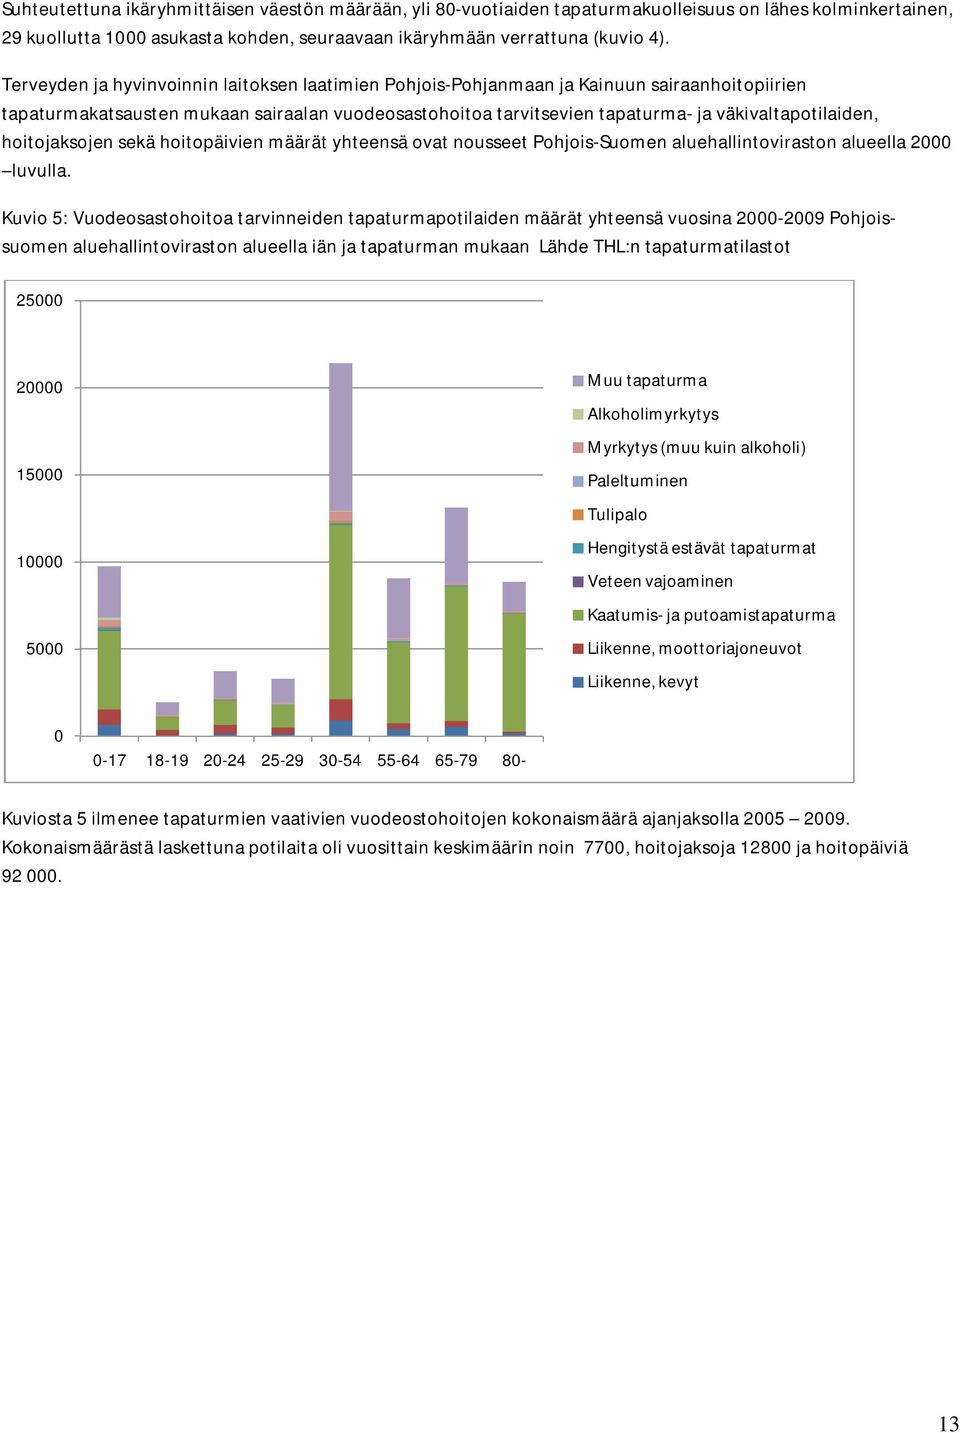 hoitojaksojen sekä hoitopäivien määrät yhteensä ovat nousseet Pohjois-Suomen aluehallintoviraston alueella 2000 luvulla.